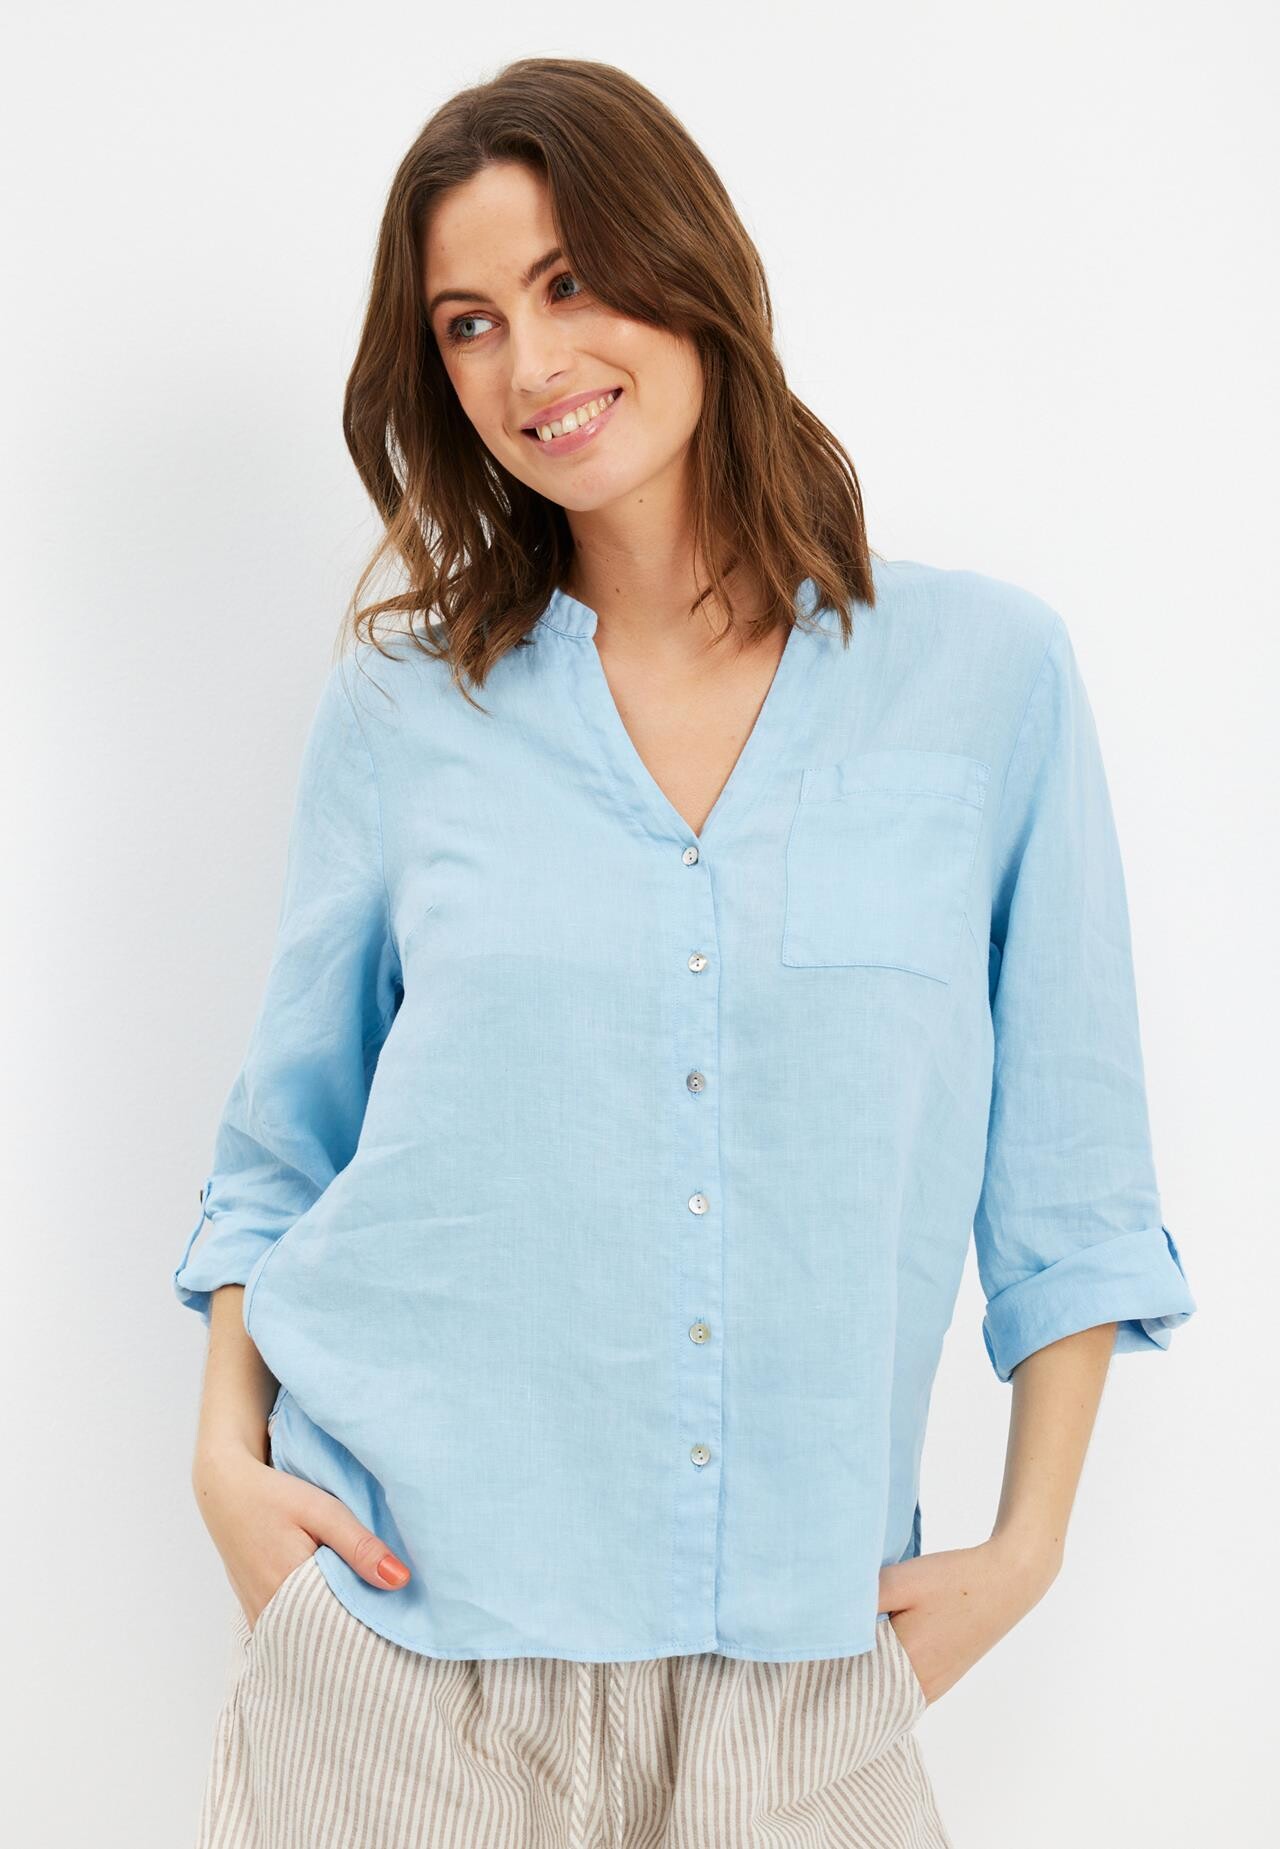 Se IN FRONT Lino Skjorte, Farve: Light Blue, Størrelse: S, Dame hos Infront Women